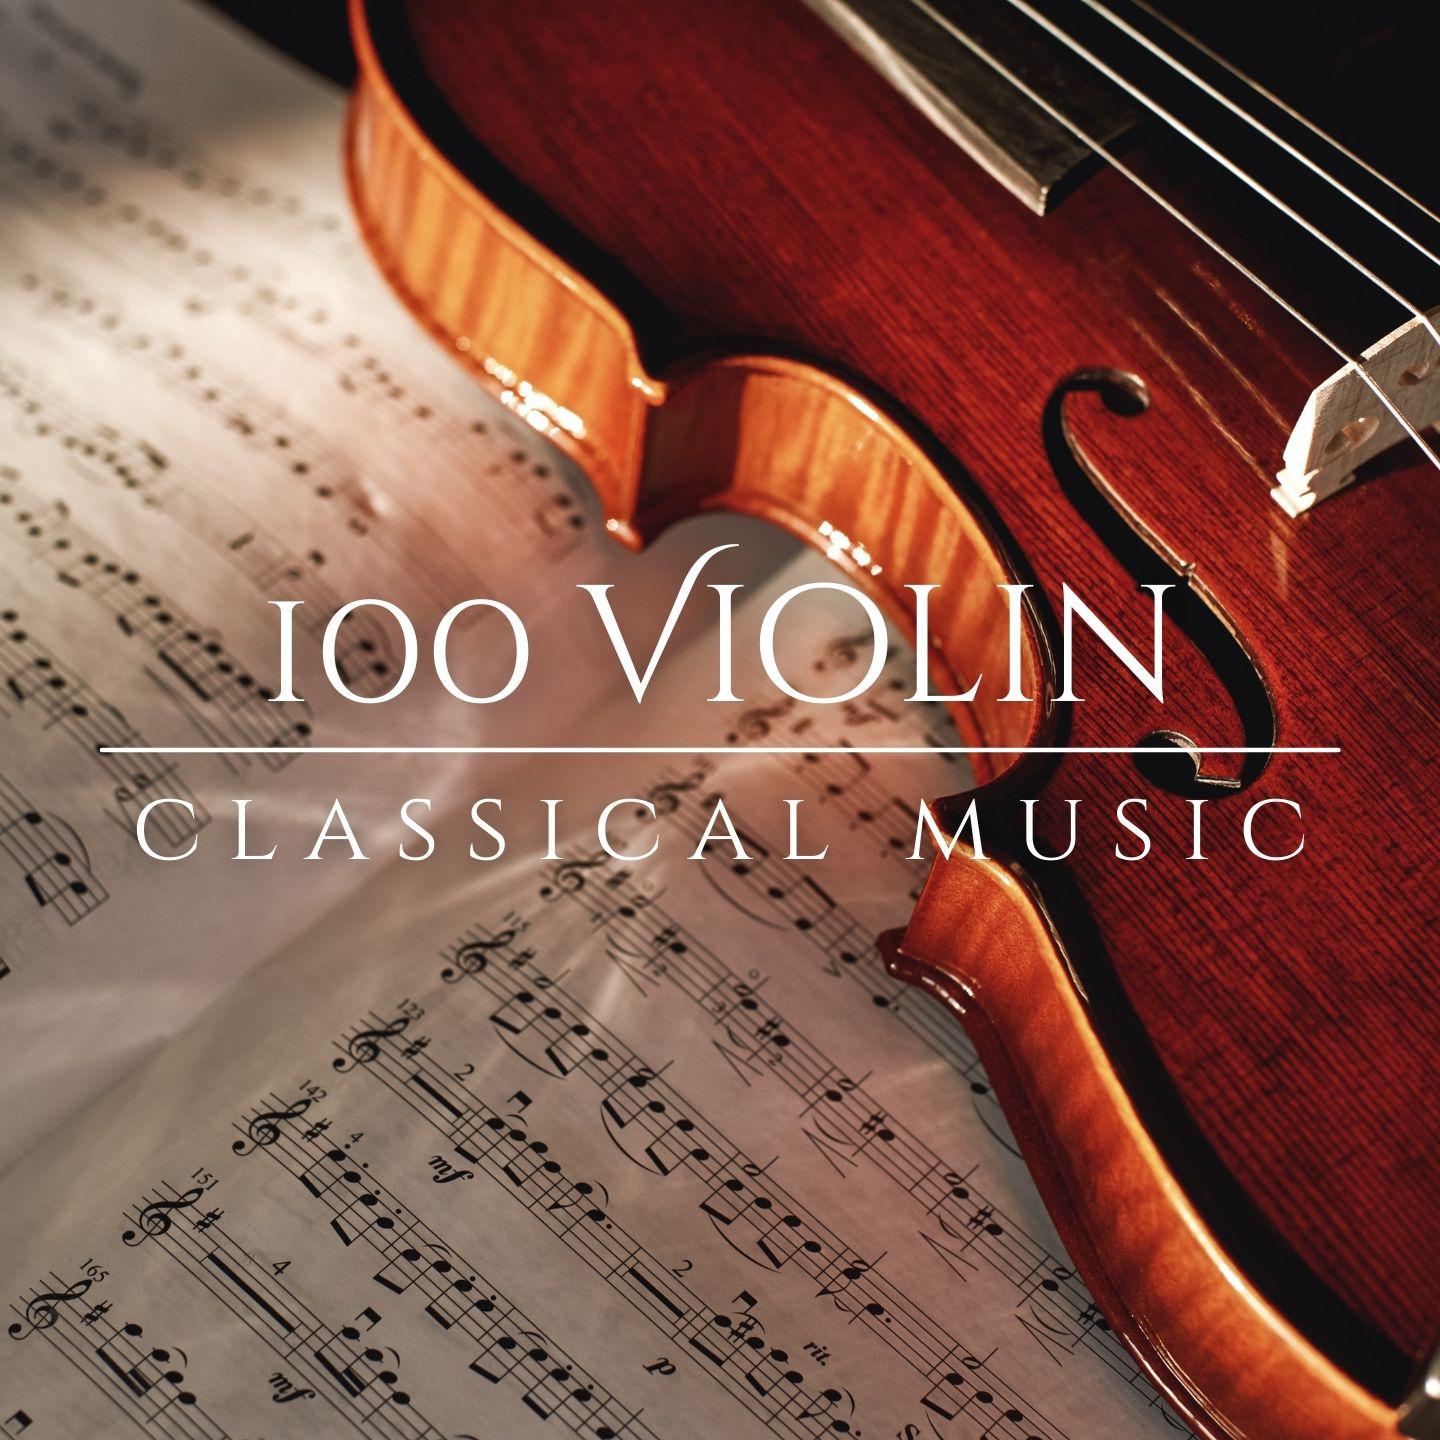 Orchestra da Camera Fiorentina - Violin Concerto No. 5 in A Major, K. 219:II. Adagio